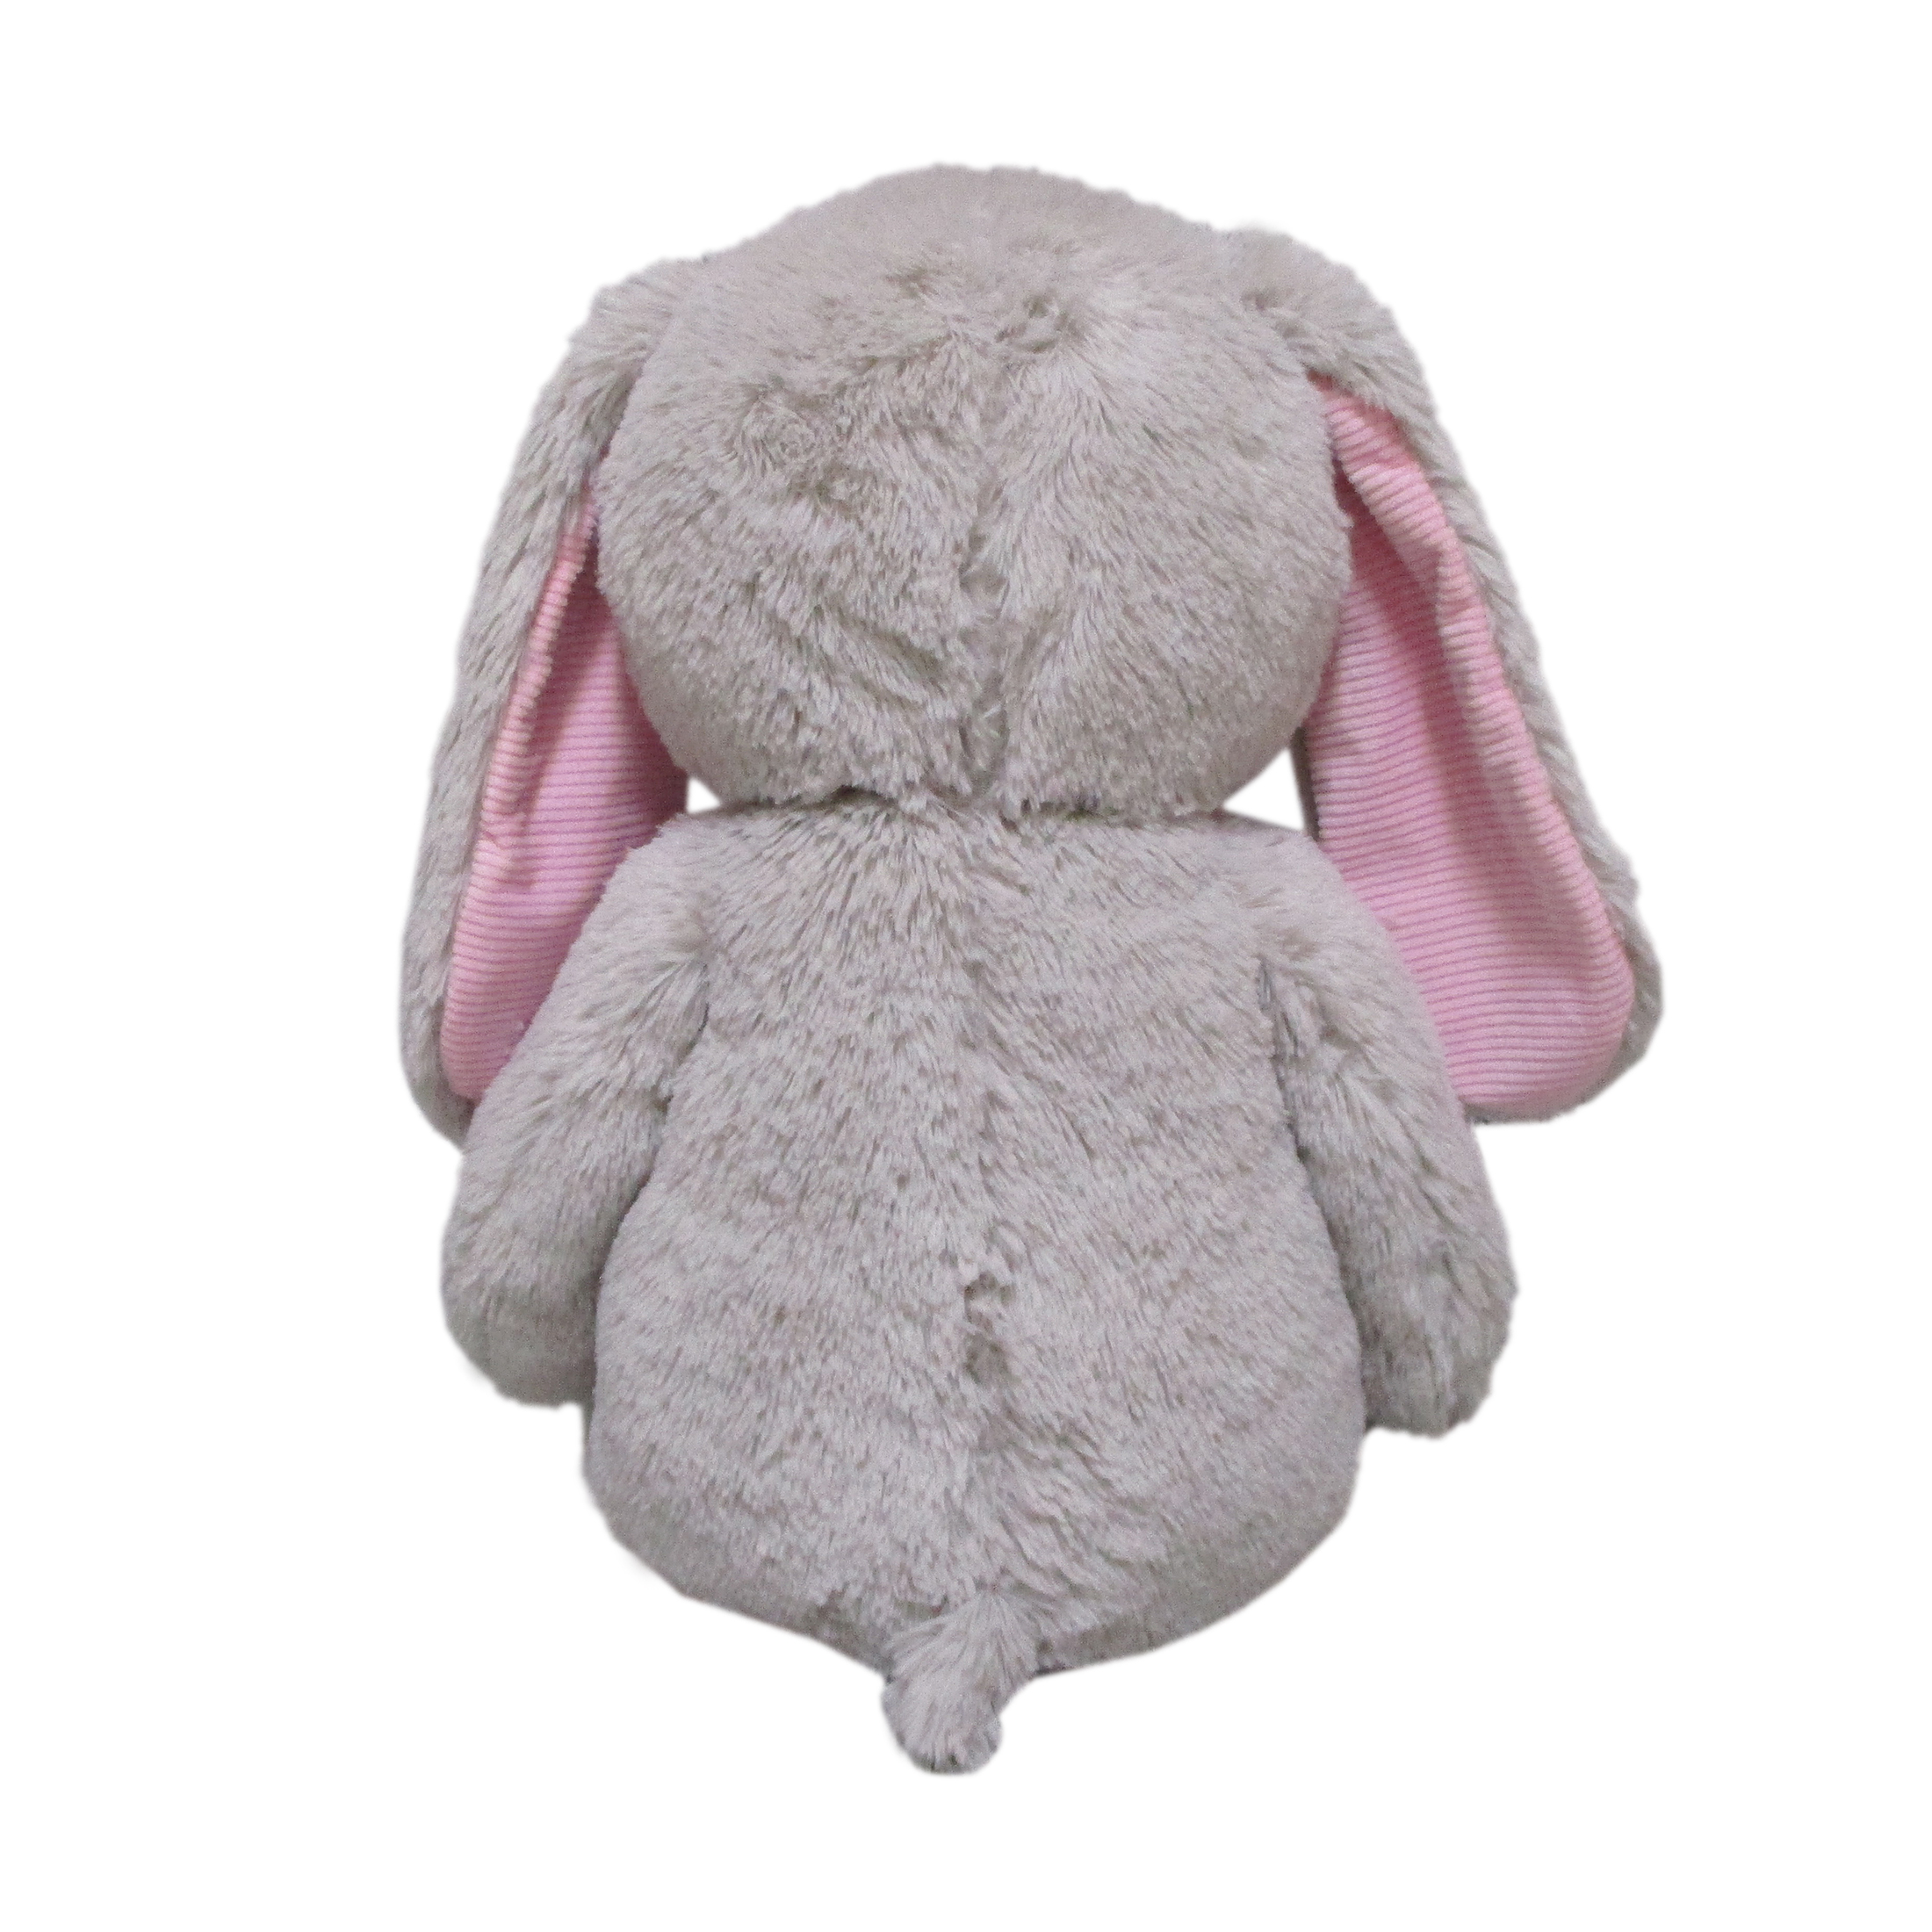 Way To Celebrate Plush 35" Large Bunny Plush, Grey - image 9 of 9